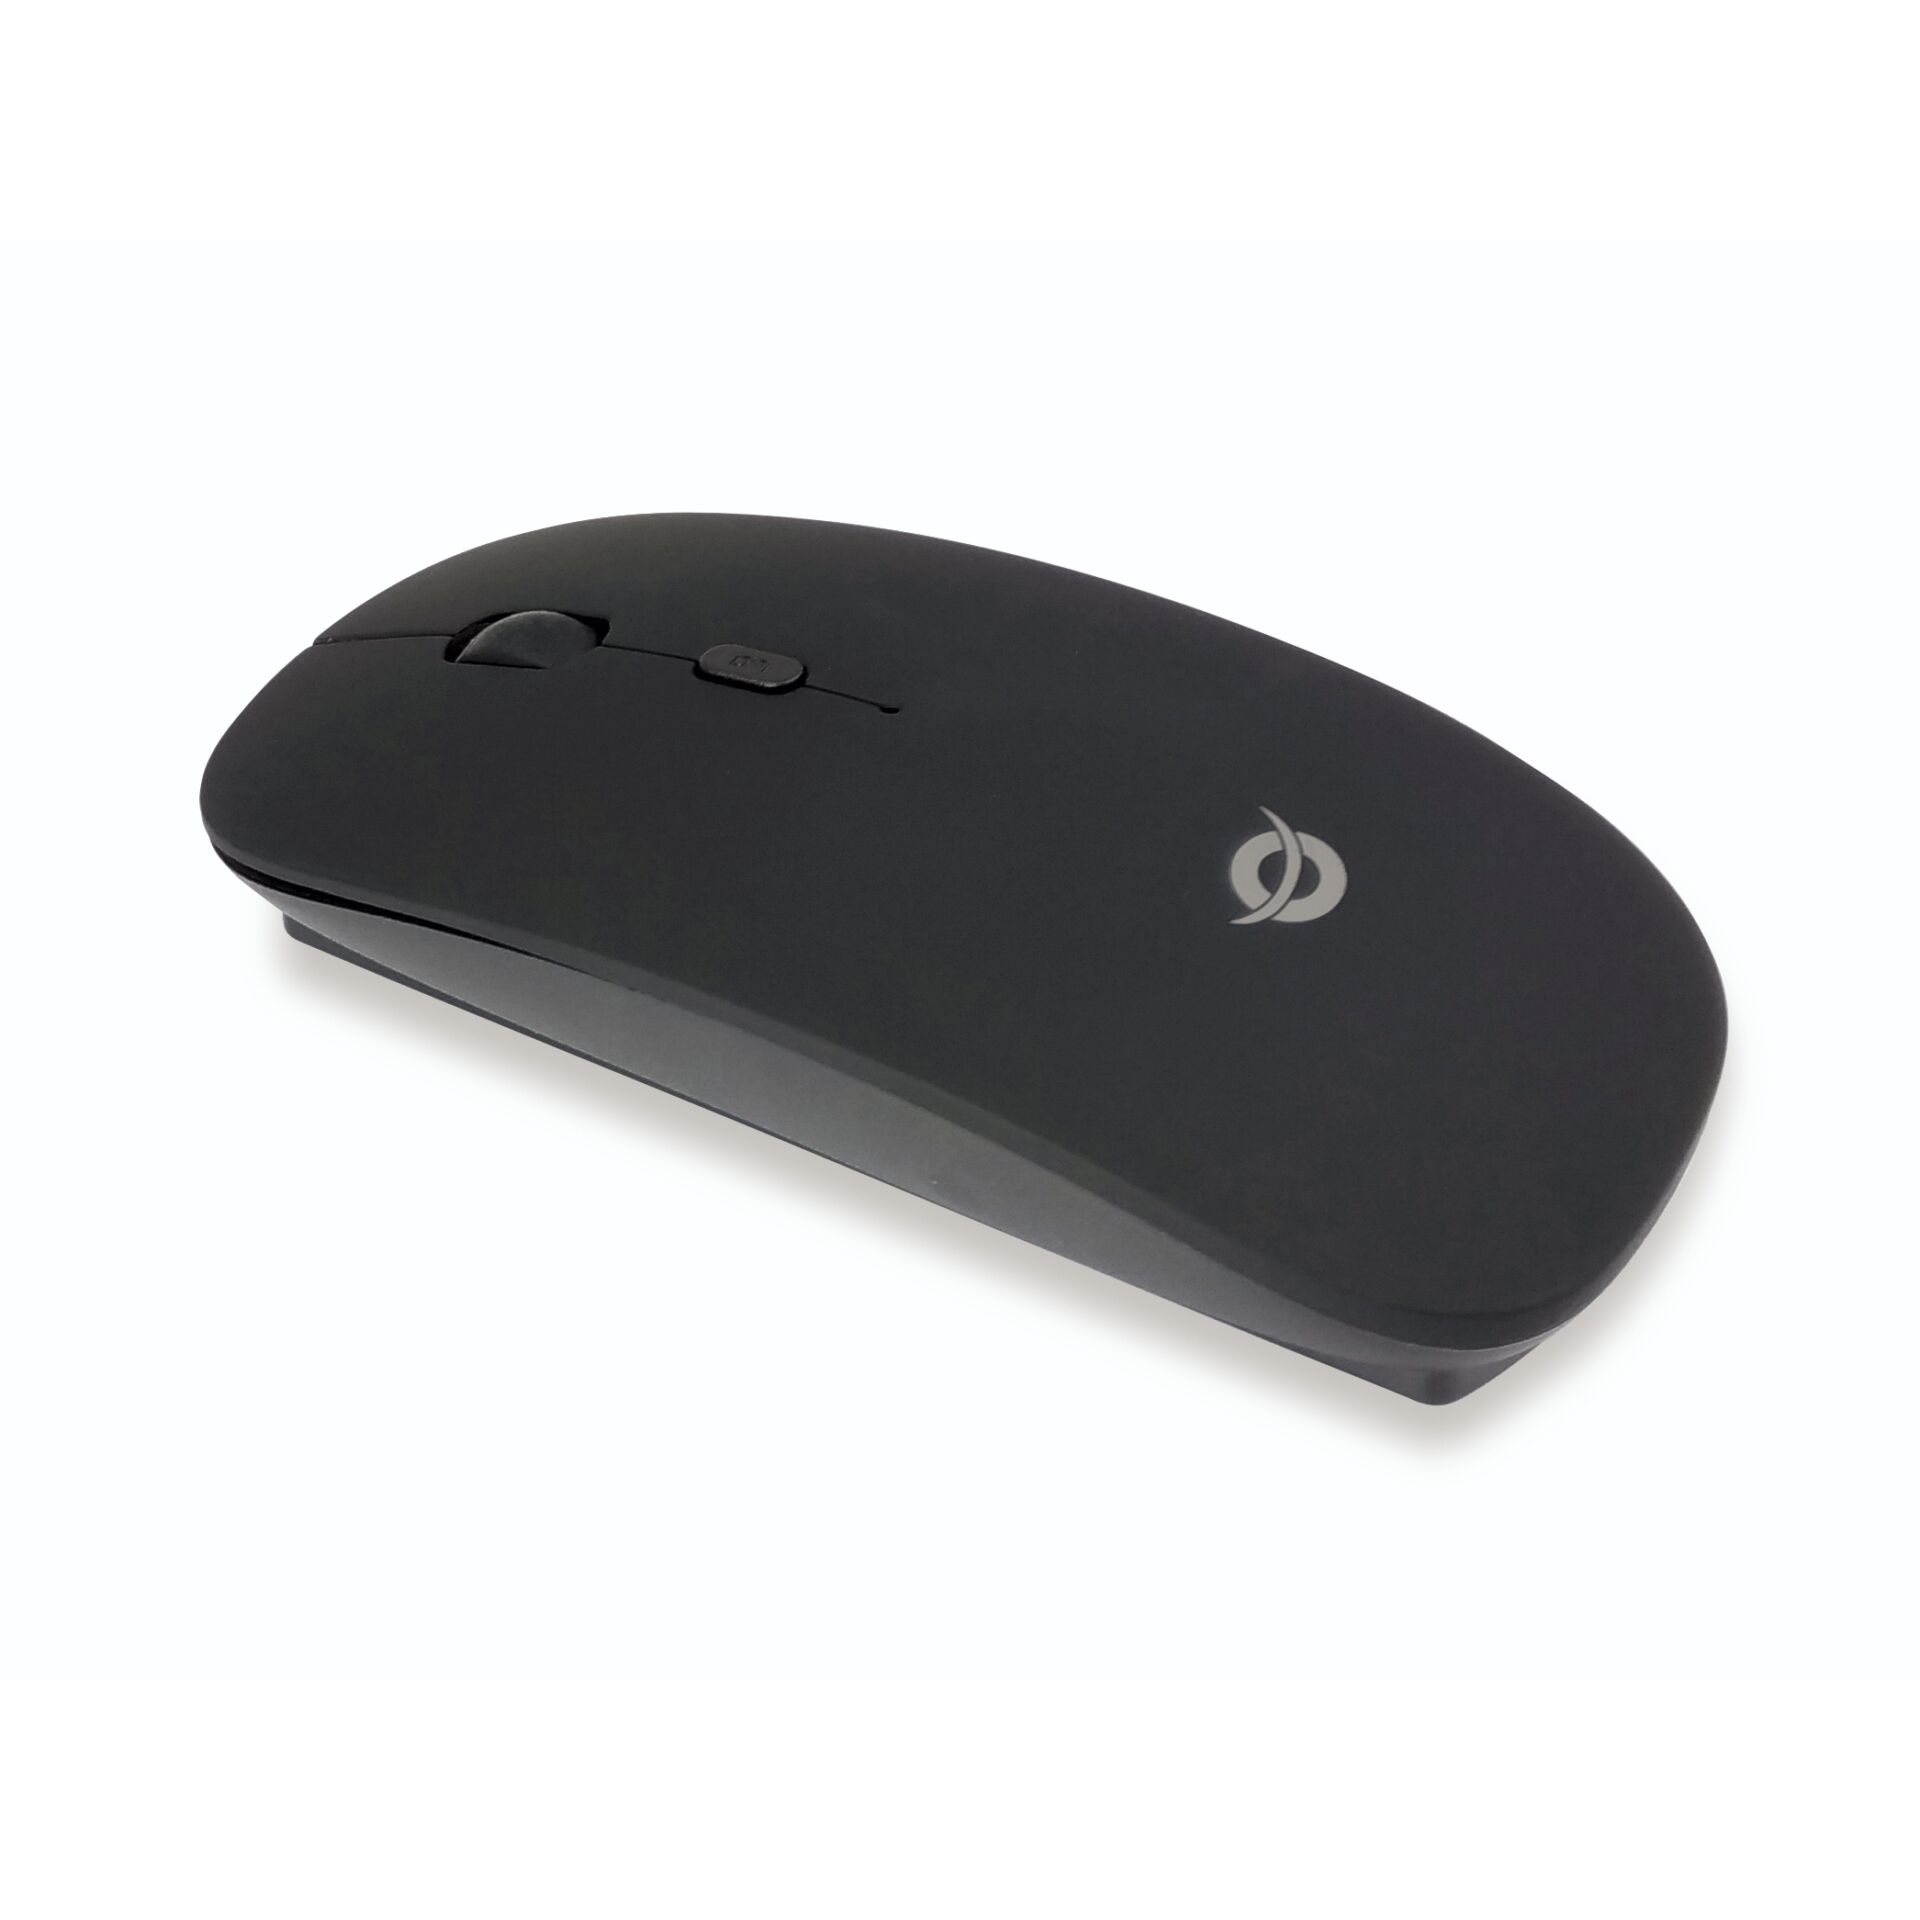 Conceptronic LORCAN Bluetooth Maus mit 4 Tasten schwarz, beidhändig